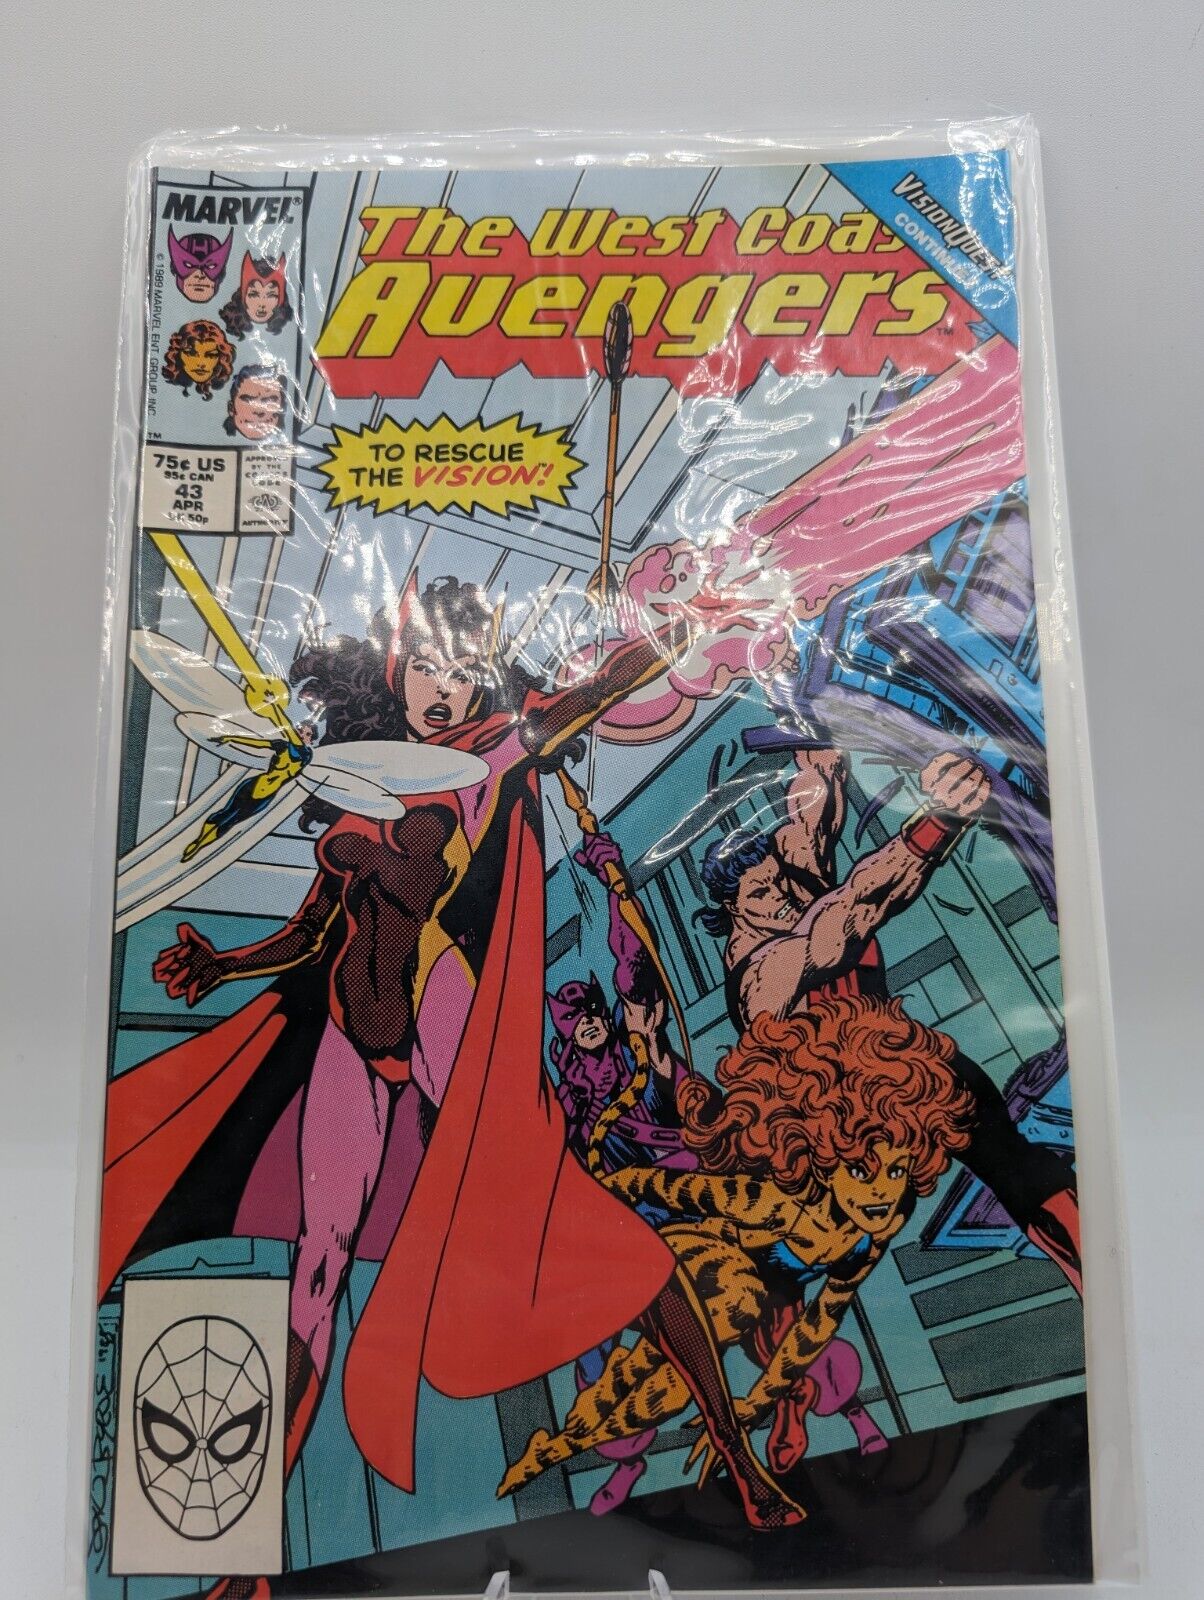 The West Coast Avengers #43 Vision Quest 1989 Marvel Comics